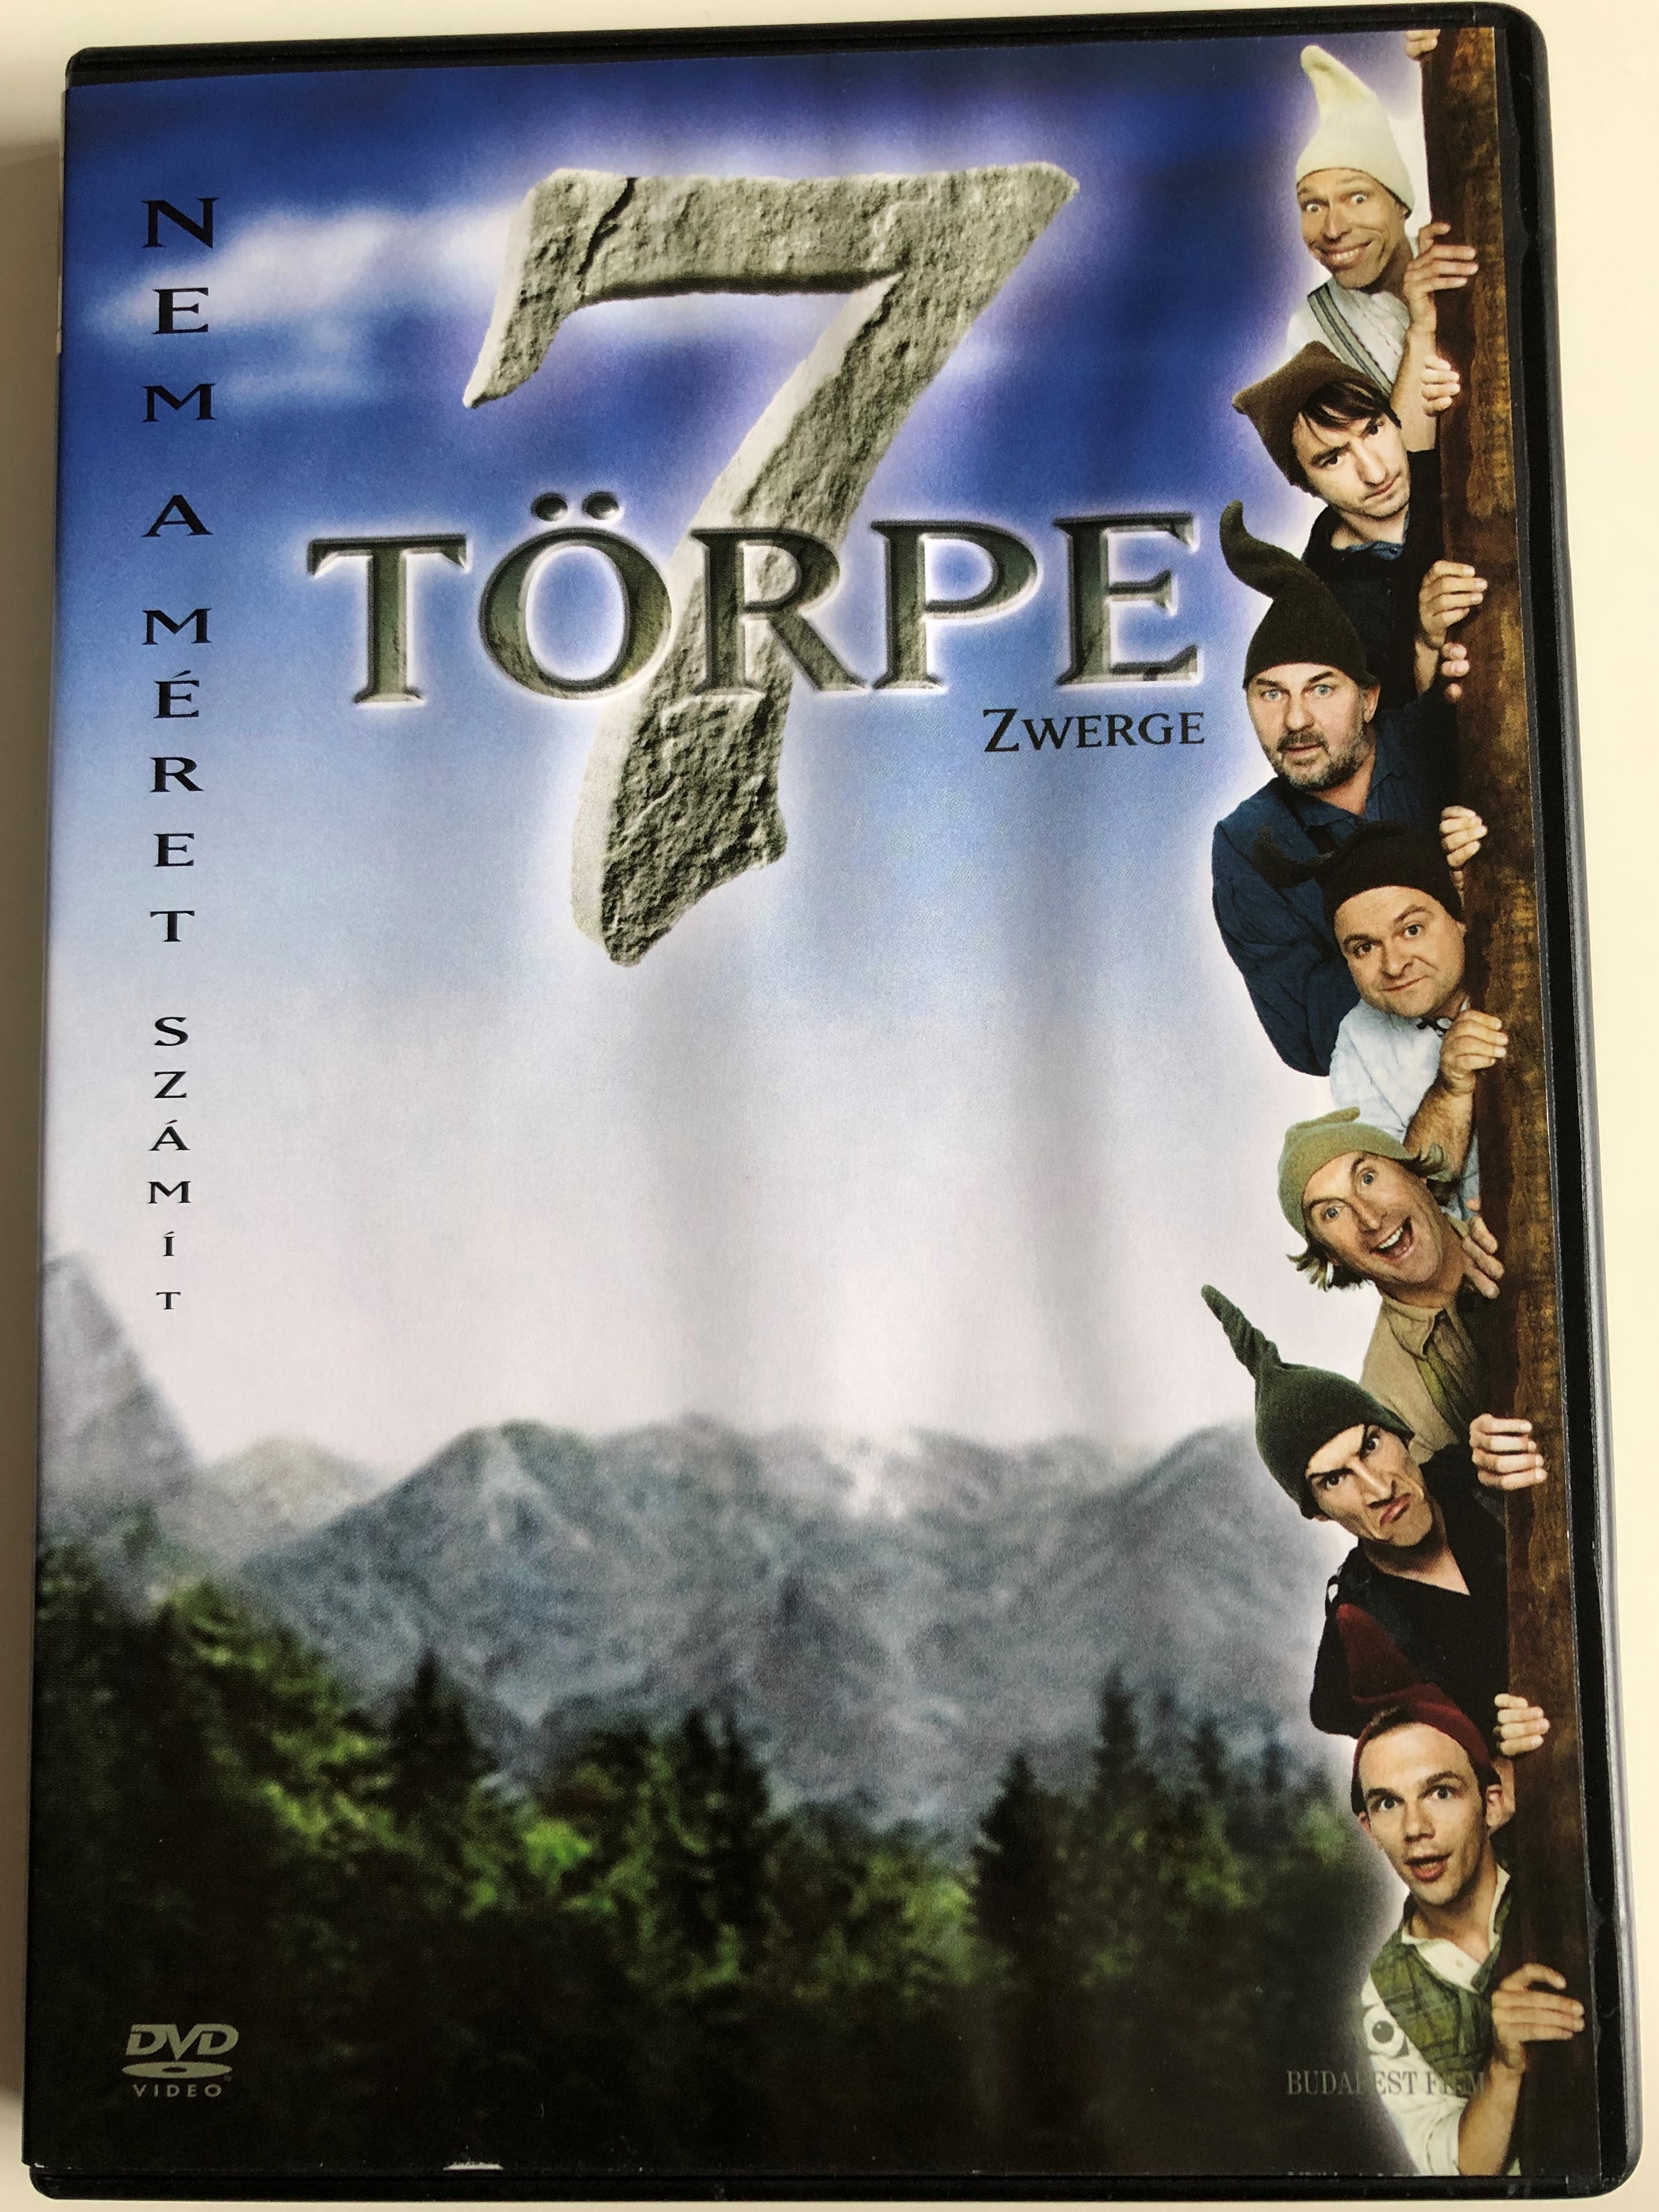 7 Zwerge DVD 2004 7 törpe 1.JPG